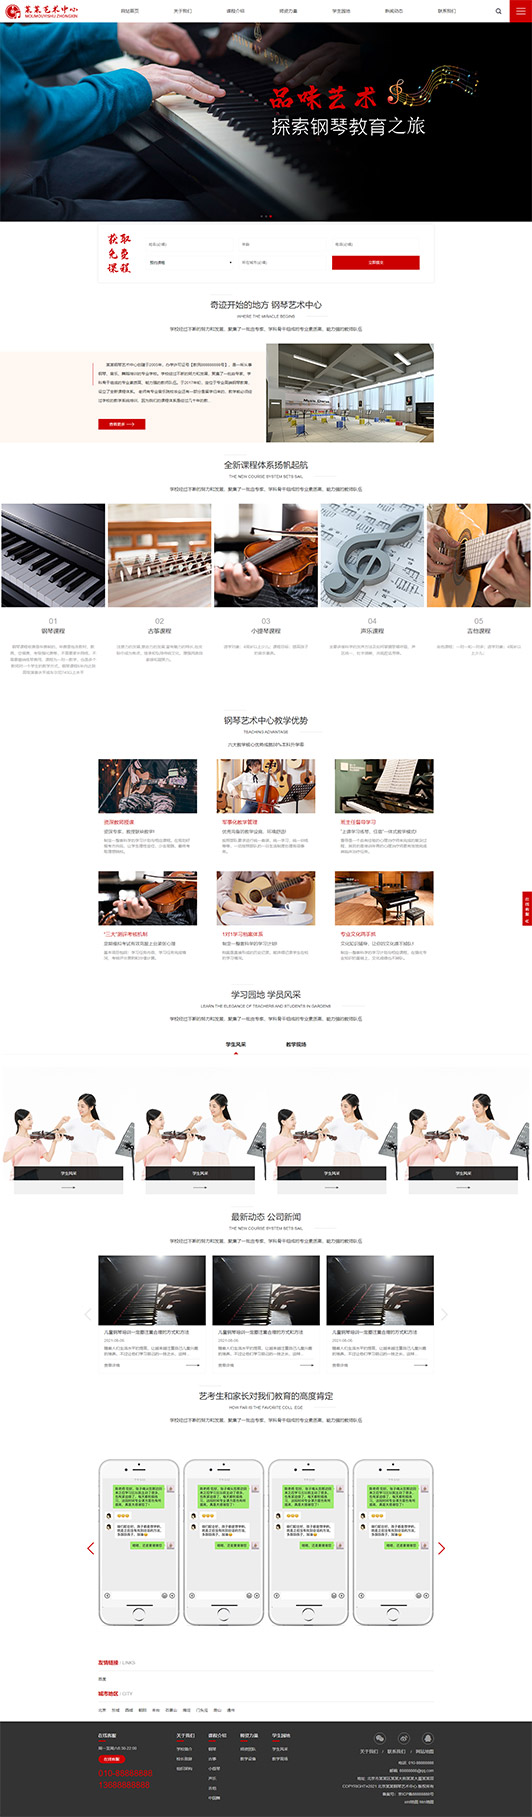 郑州钢琴艺术培训公司响应式企业网站